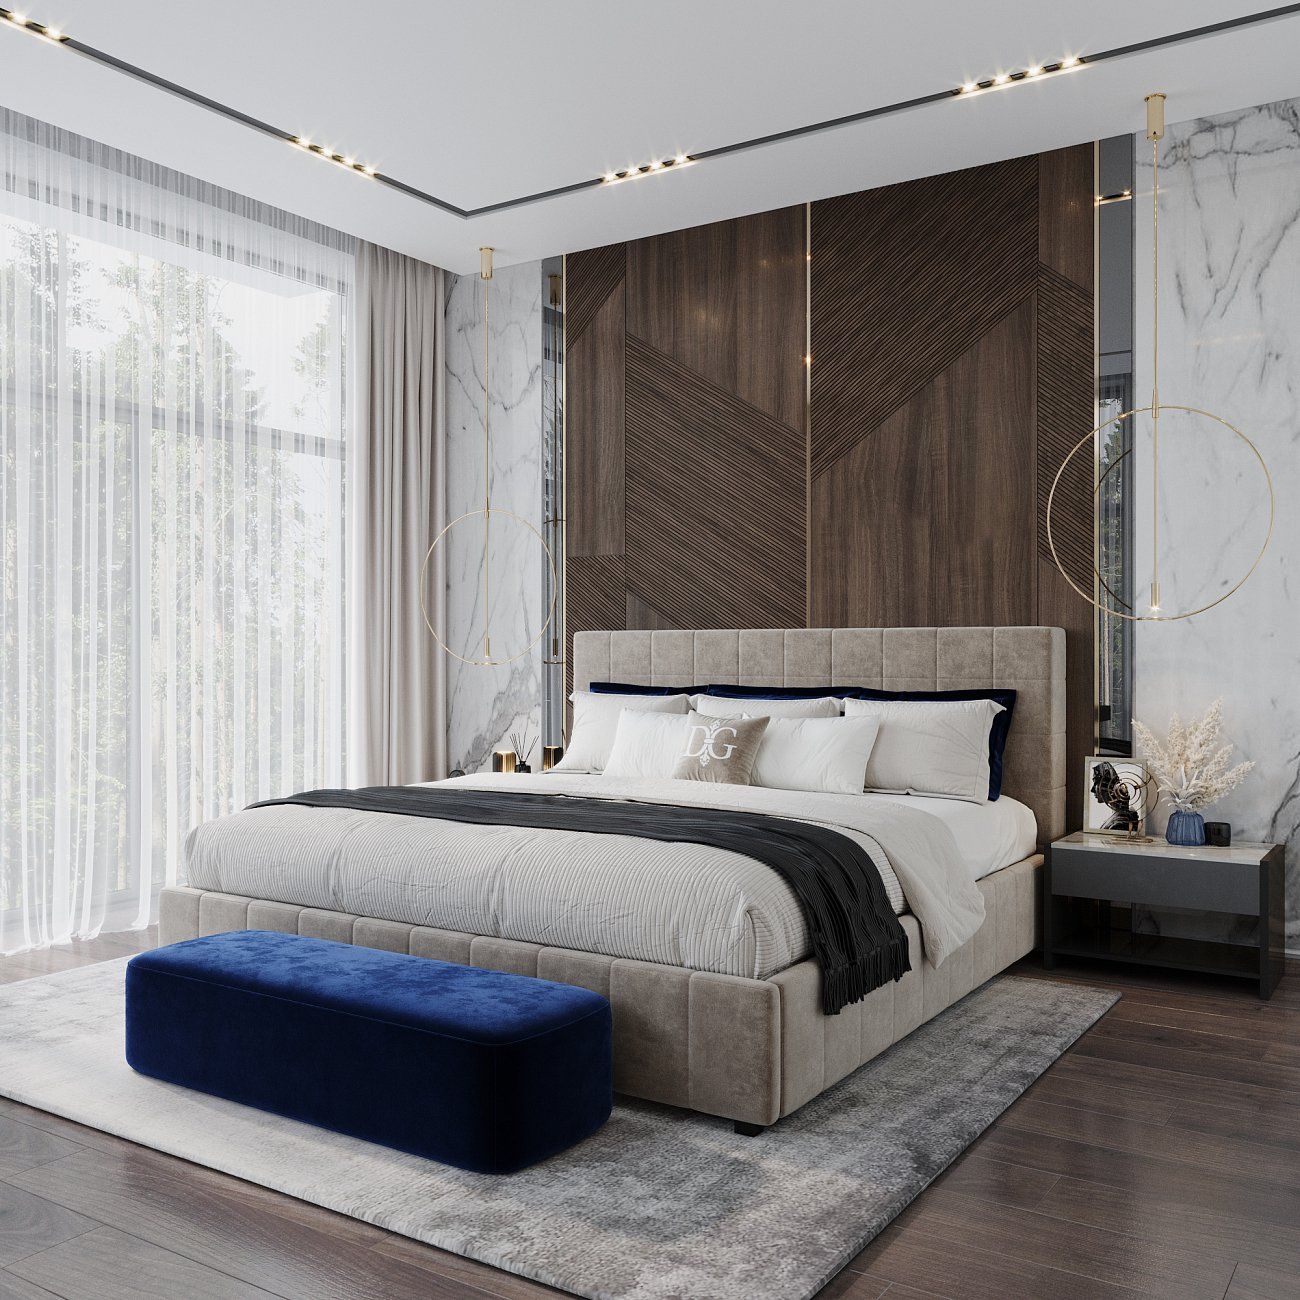 Double bed 180x200 cm light beige Shining Modern